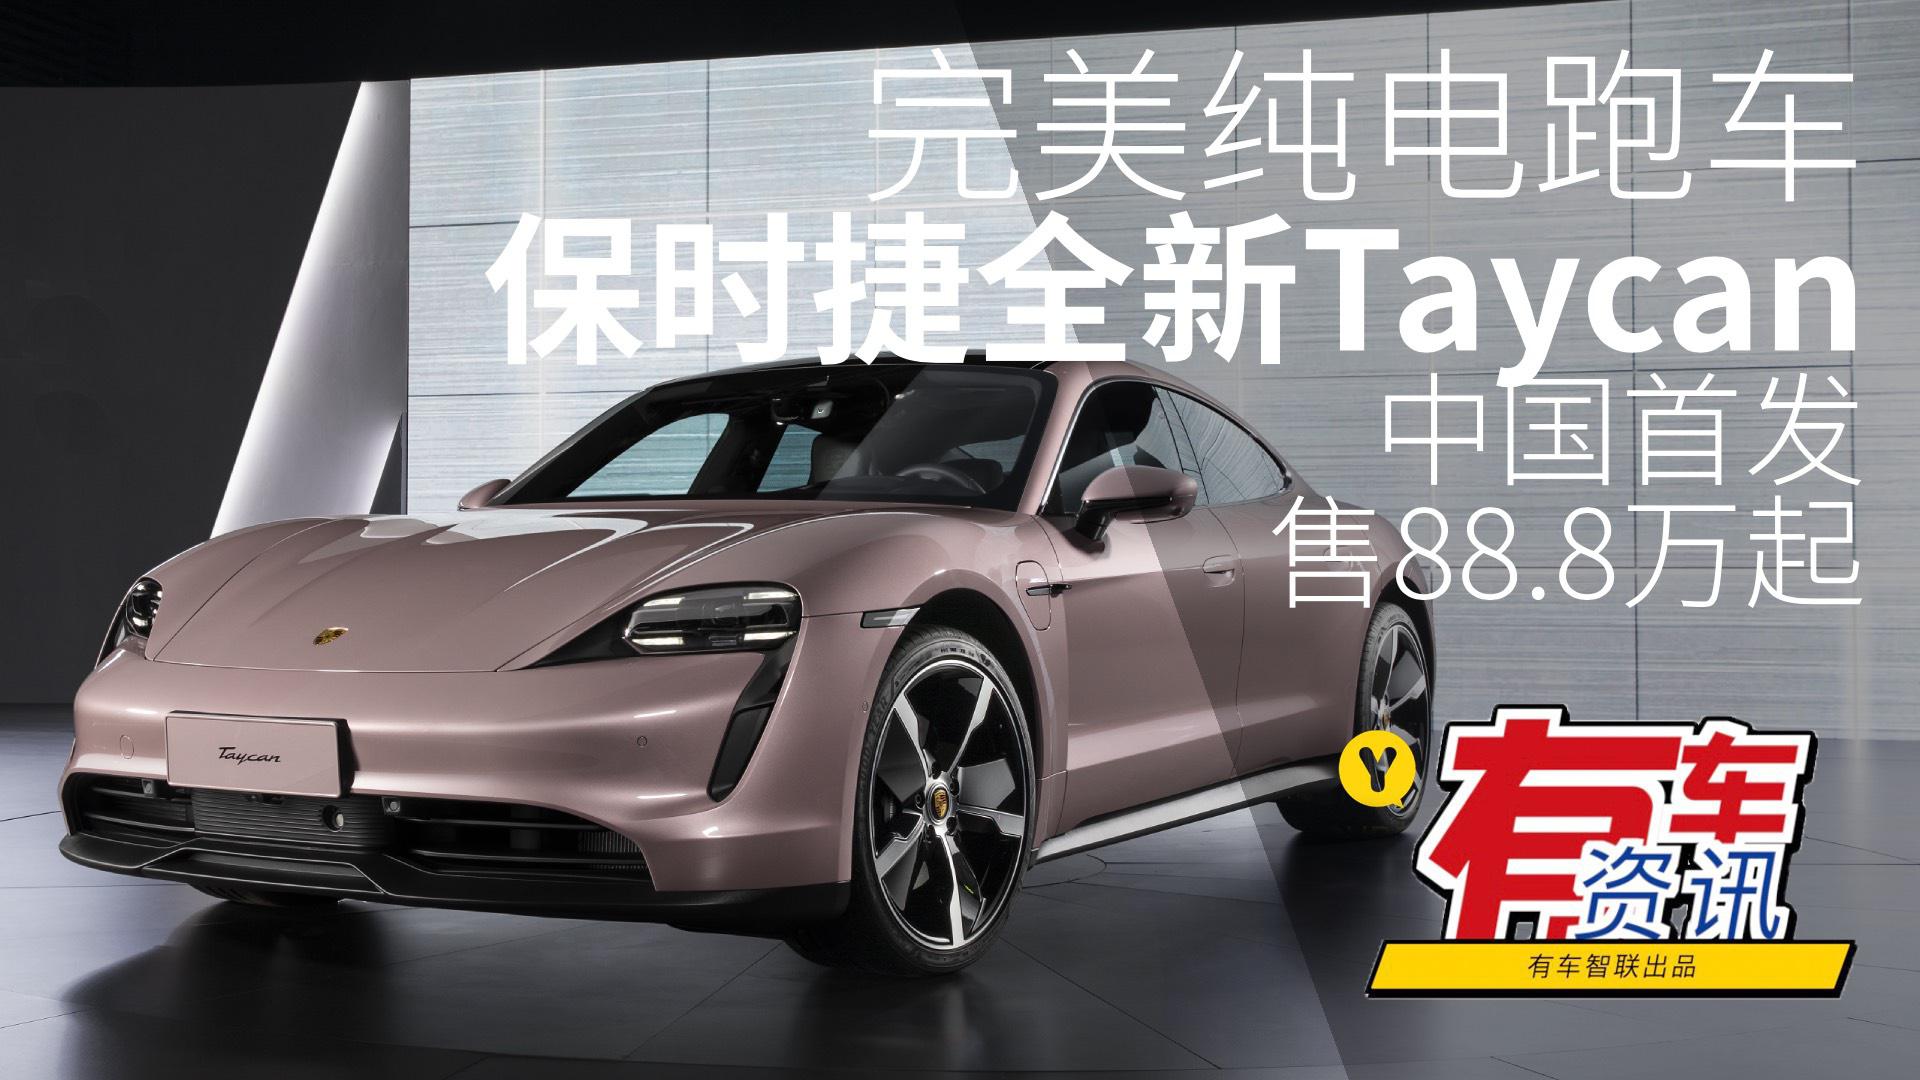 完美纯电跑车 保时捷全新Taycan中国首发 售88.8万元起